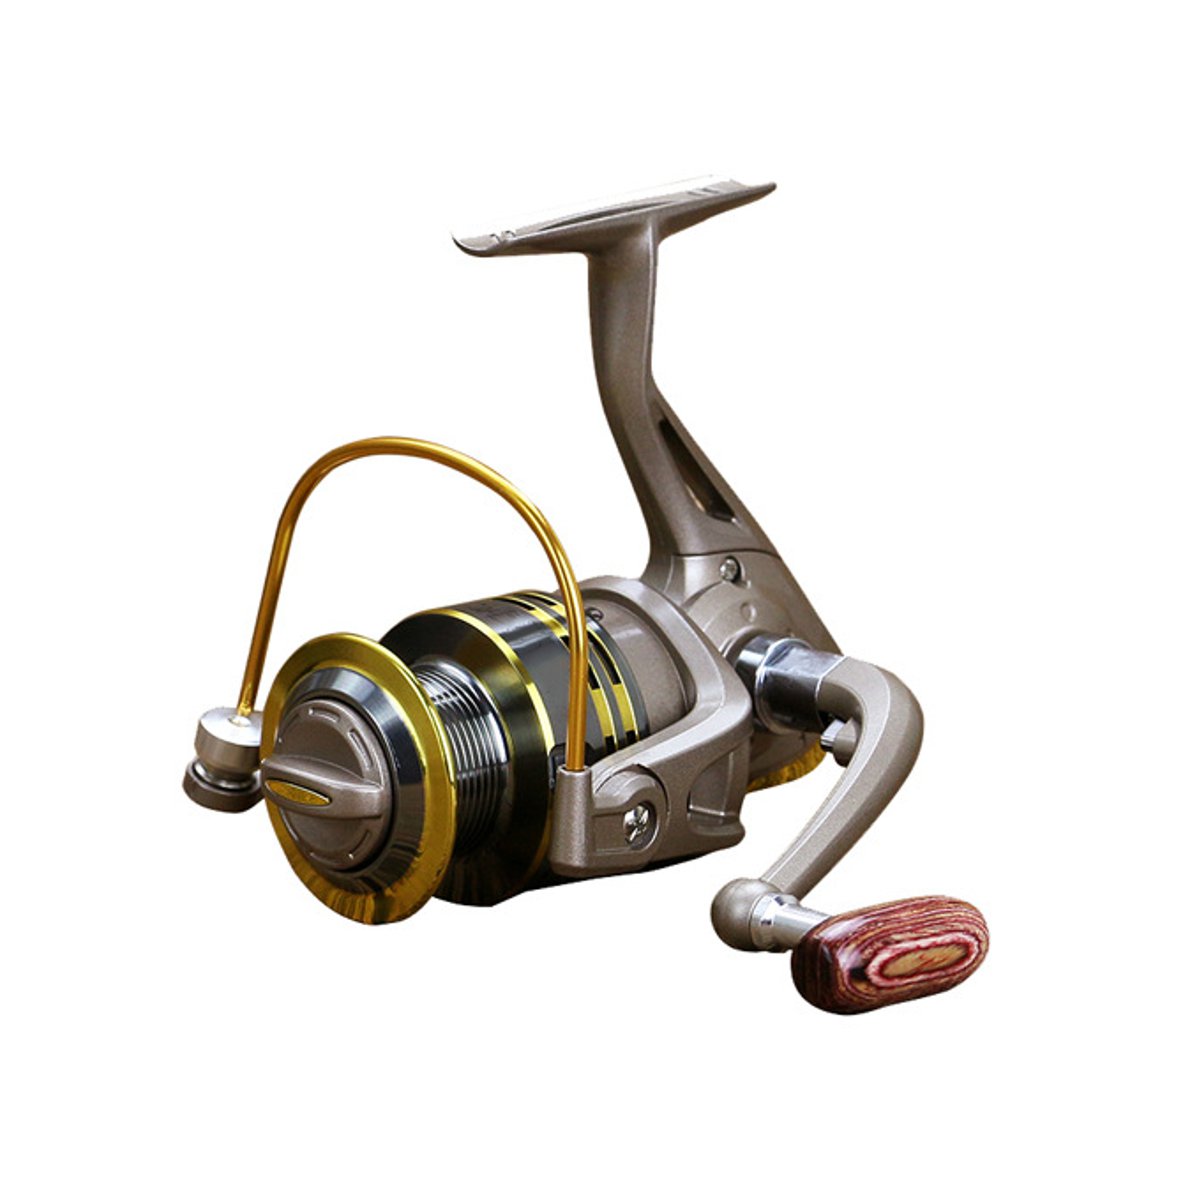 

12 Шарикоподшипник металлический золотник Рыбалка Катушка 5,5: 1 Складной колесо Рыбалка